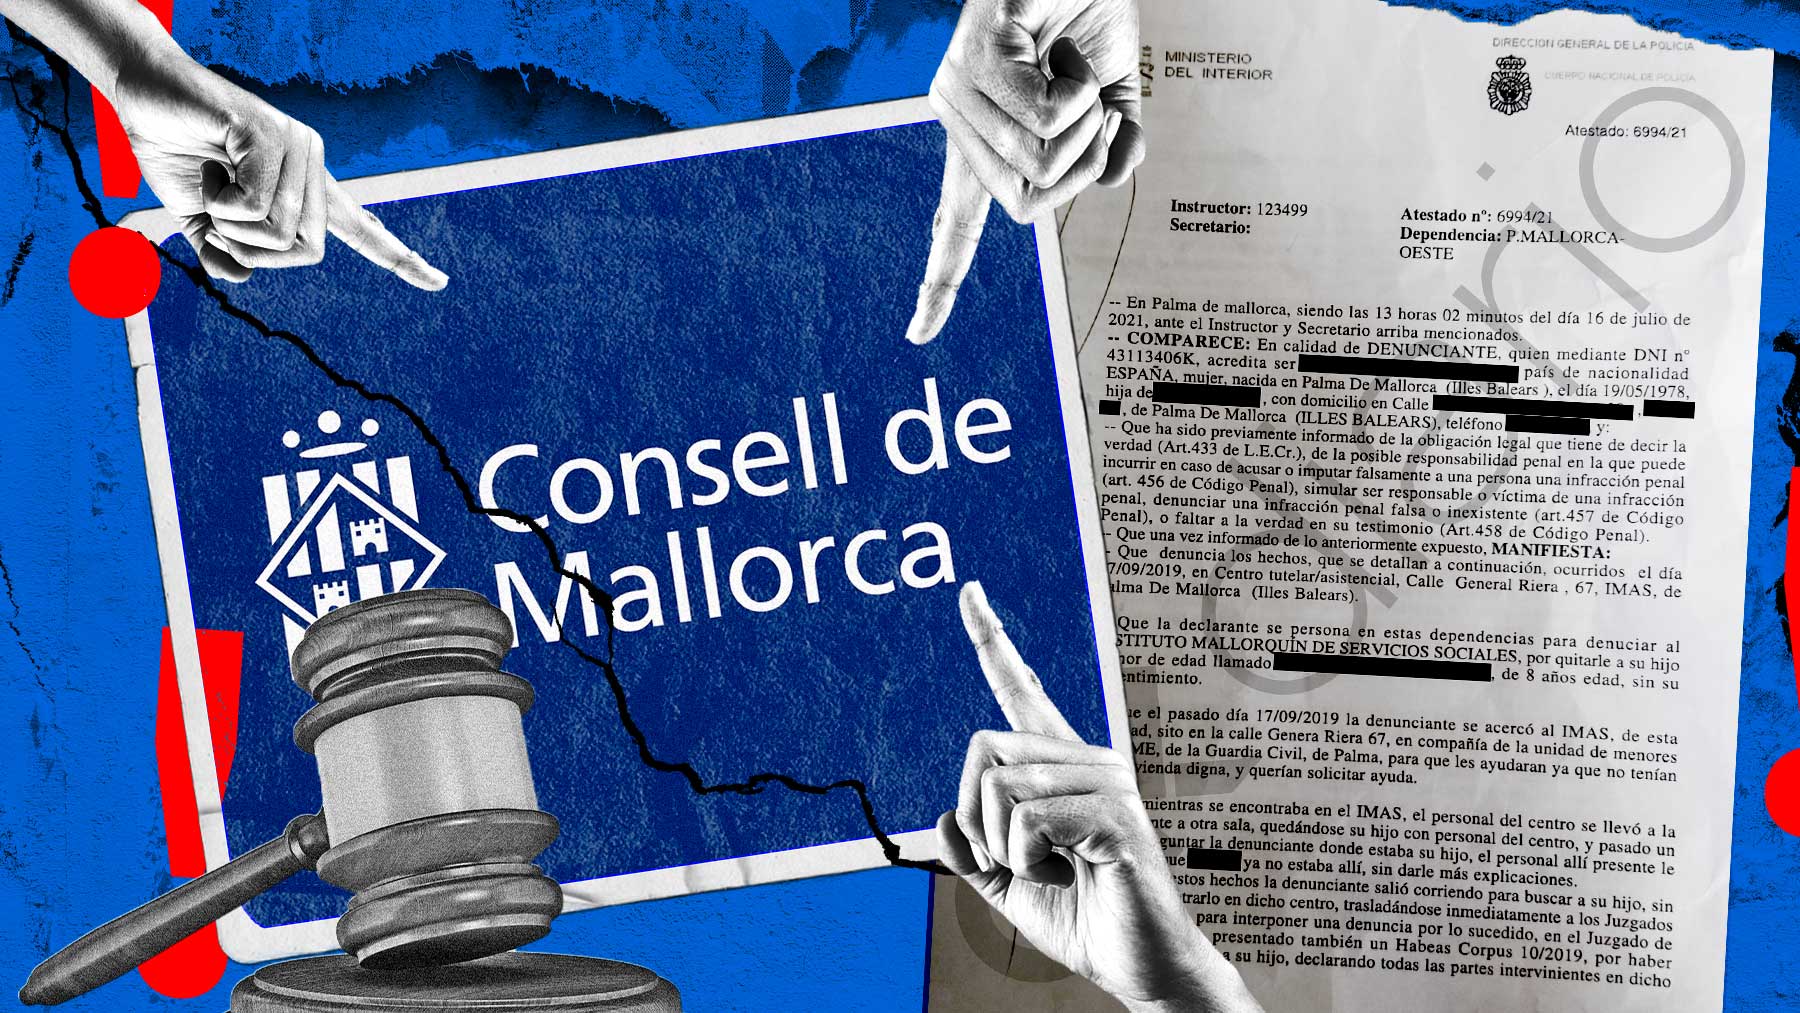 La denuncia interpuesta contra el Consell de Mallorca.